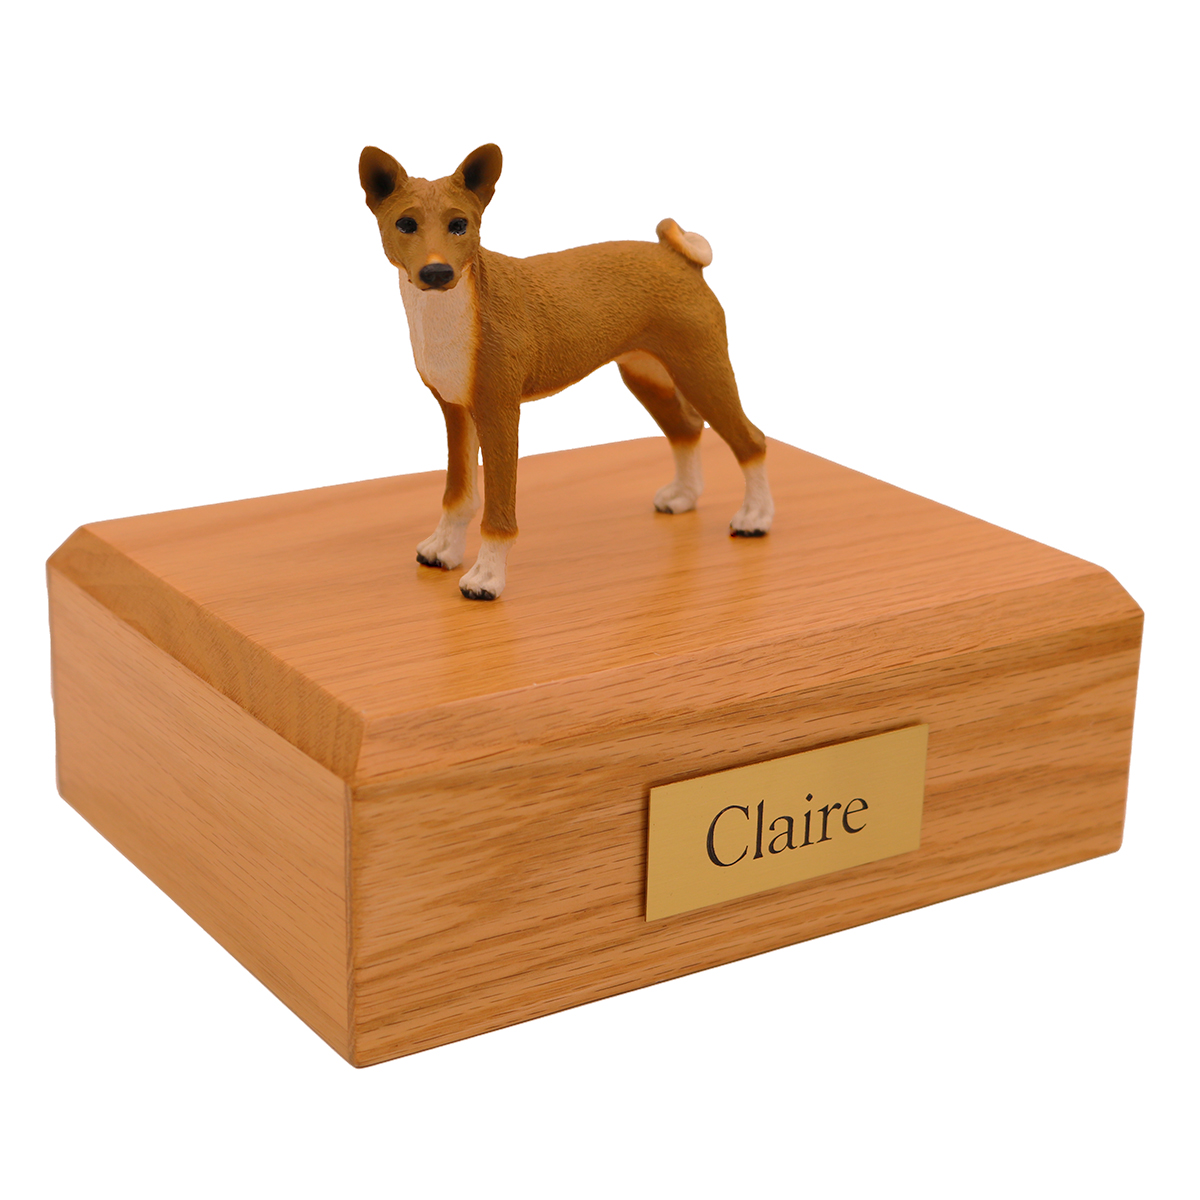 Dog, Basenji - Figurine Urn